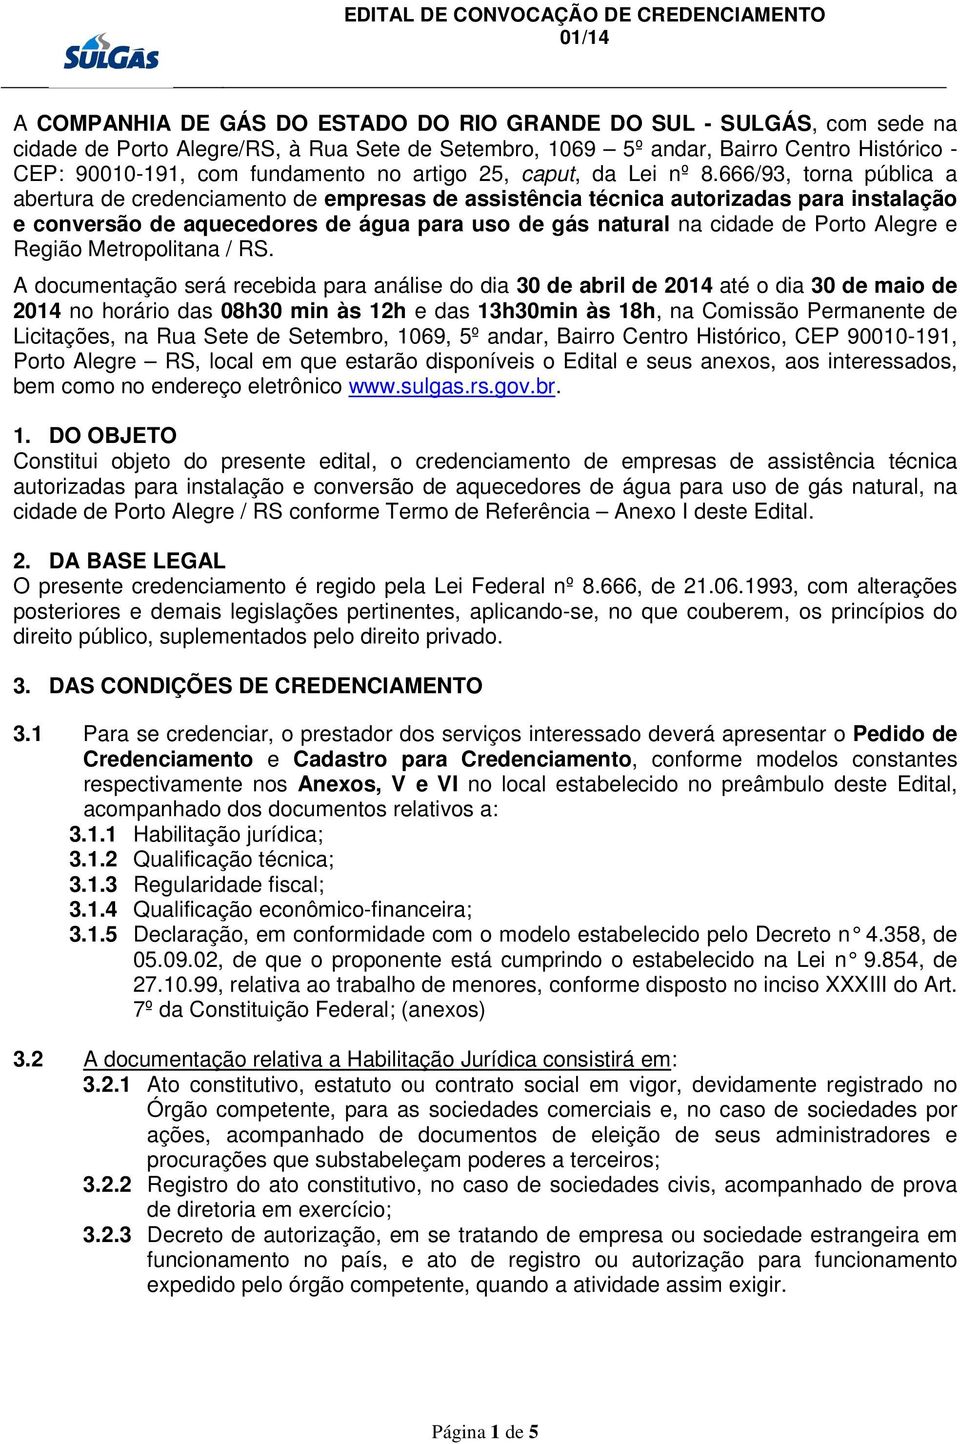 666/93, torna pública a abertura de credenciamento de empresas de assistência técnica autorizadas para instalação e conversão de aquecedores de água para uso de gás natural na cidade de Porto Alegre